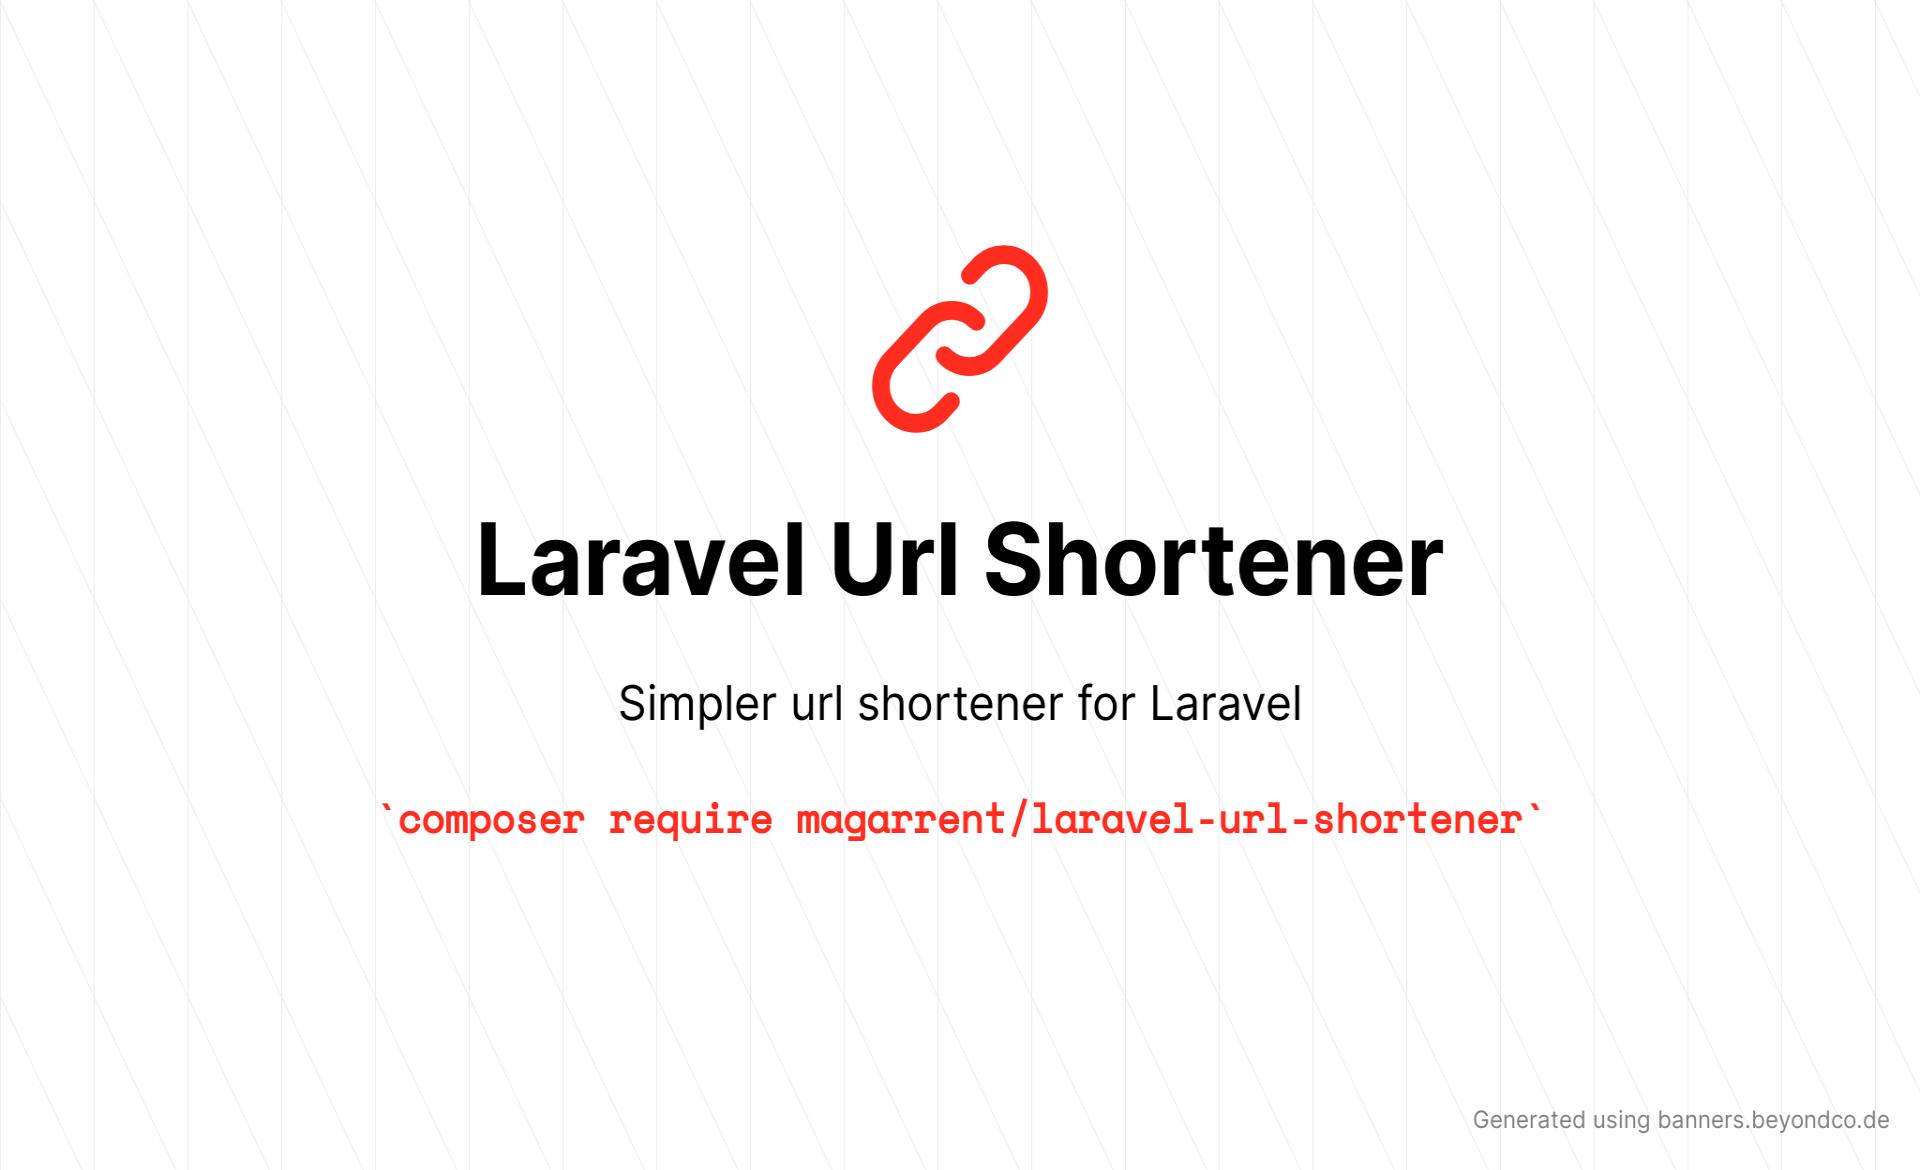 Simpler Url Shortener for Laravel